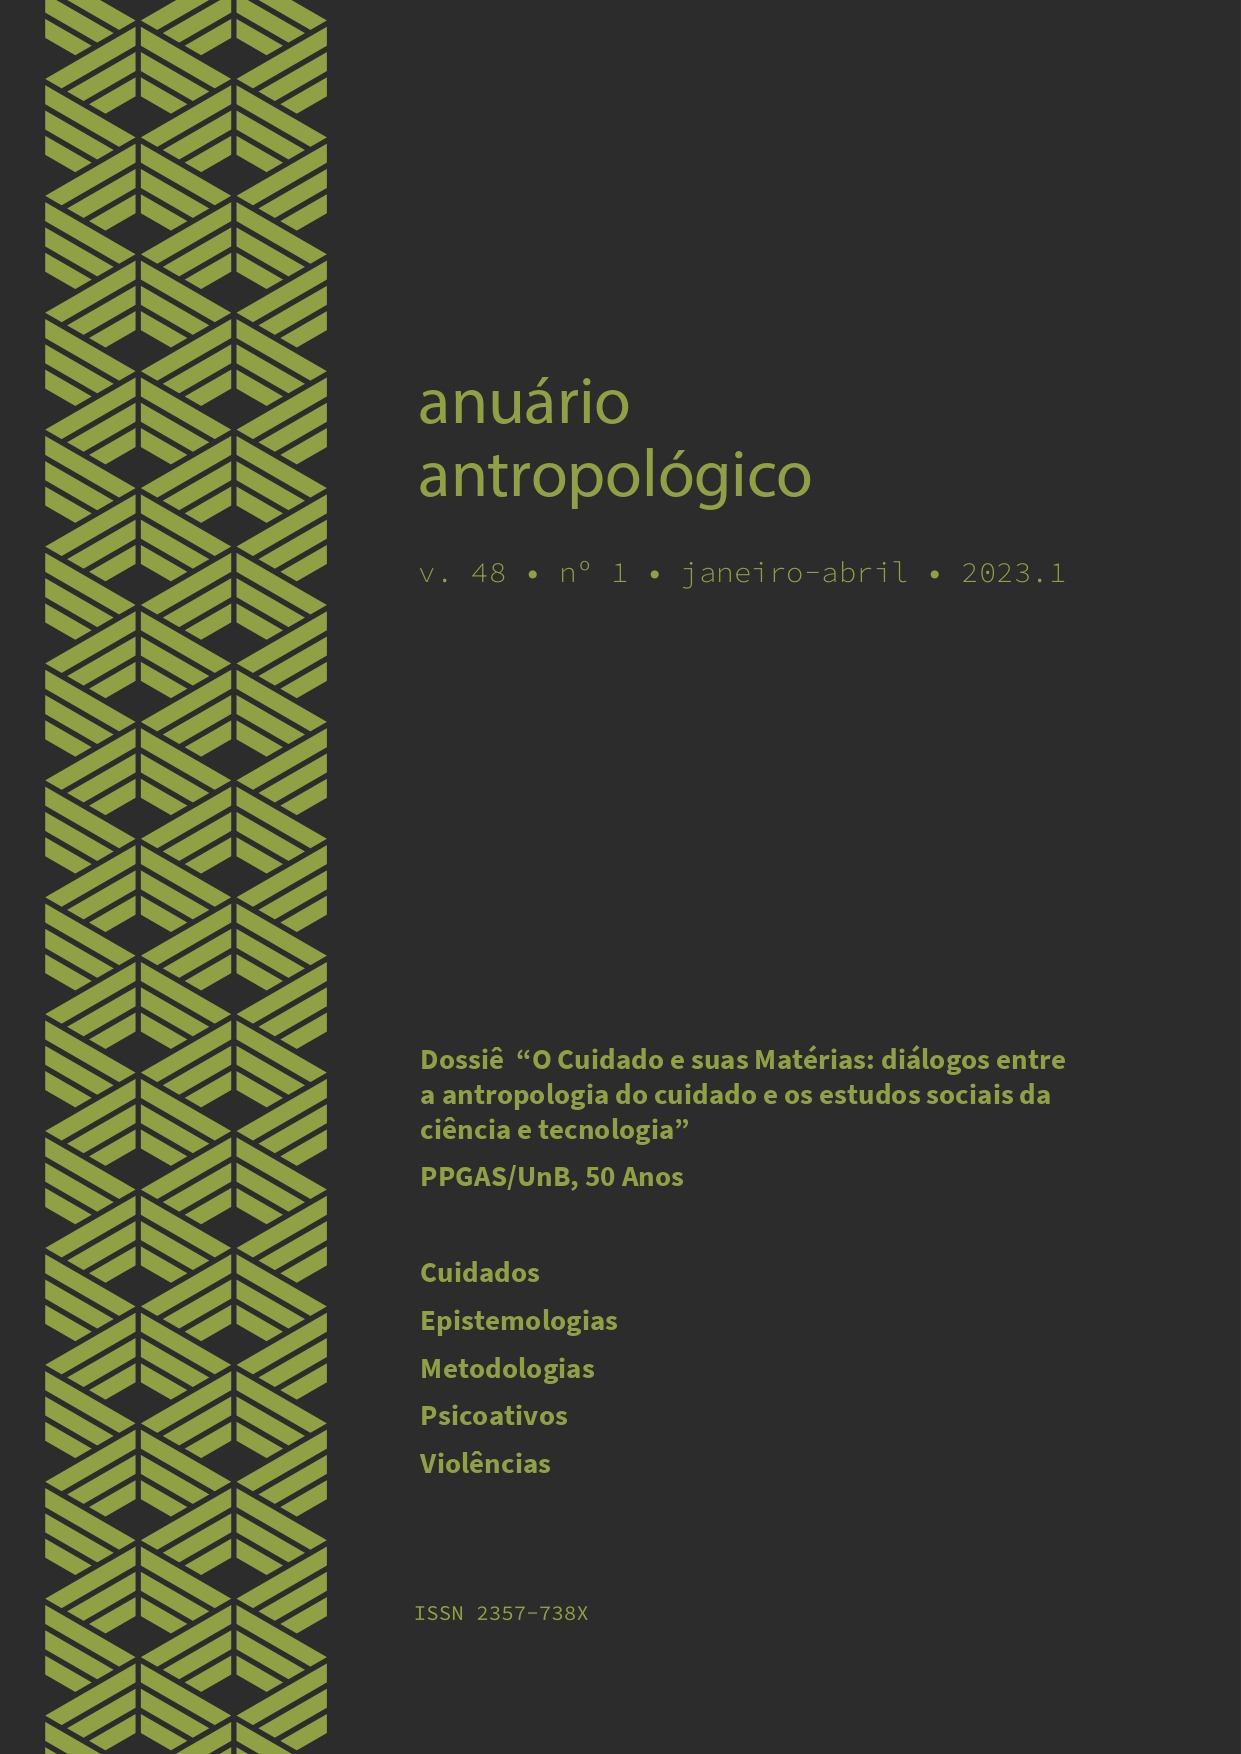 					Visualizar v. 48 n. 1 (2023): Anuário Antropológico
				